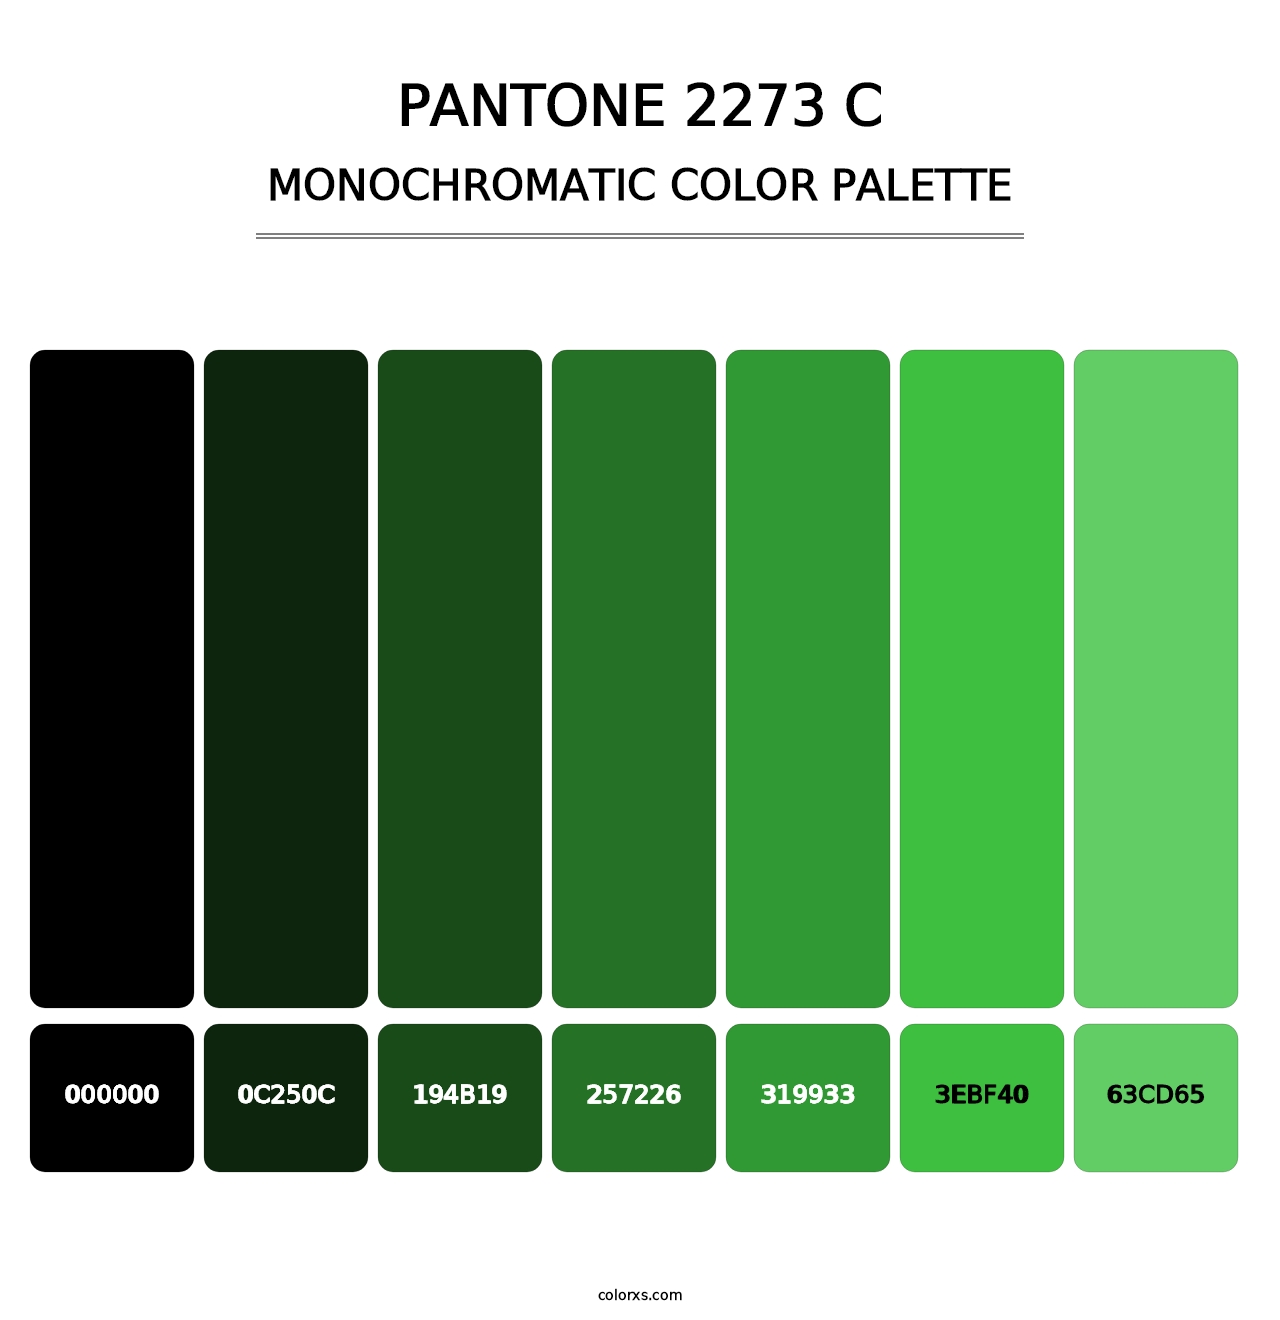 PANTONE 2273 C - Monochromatic Color Palette